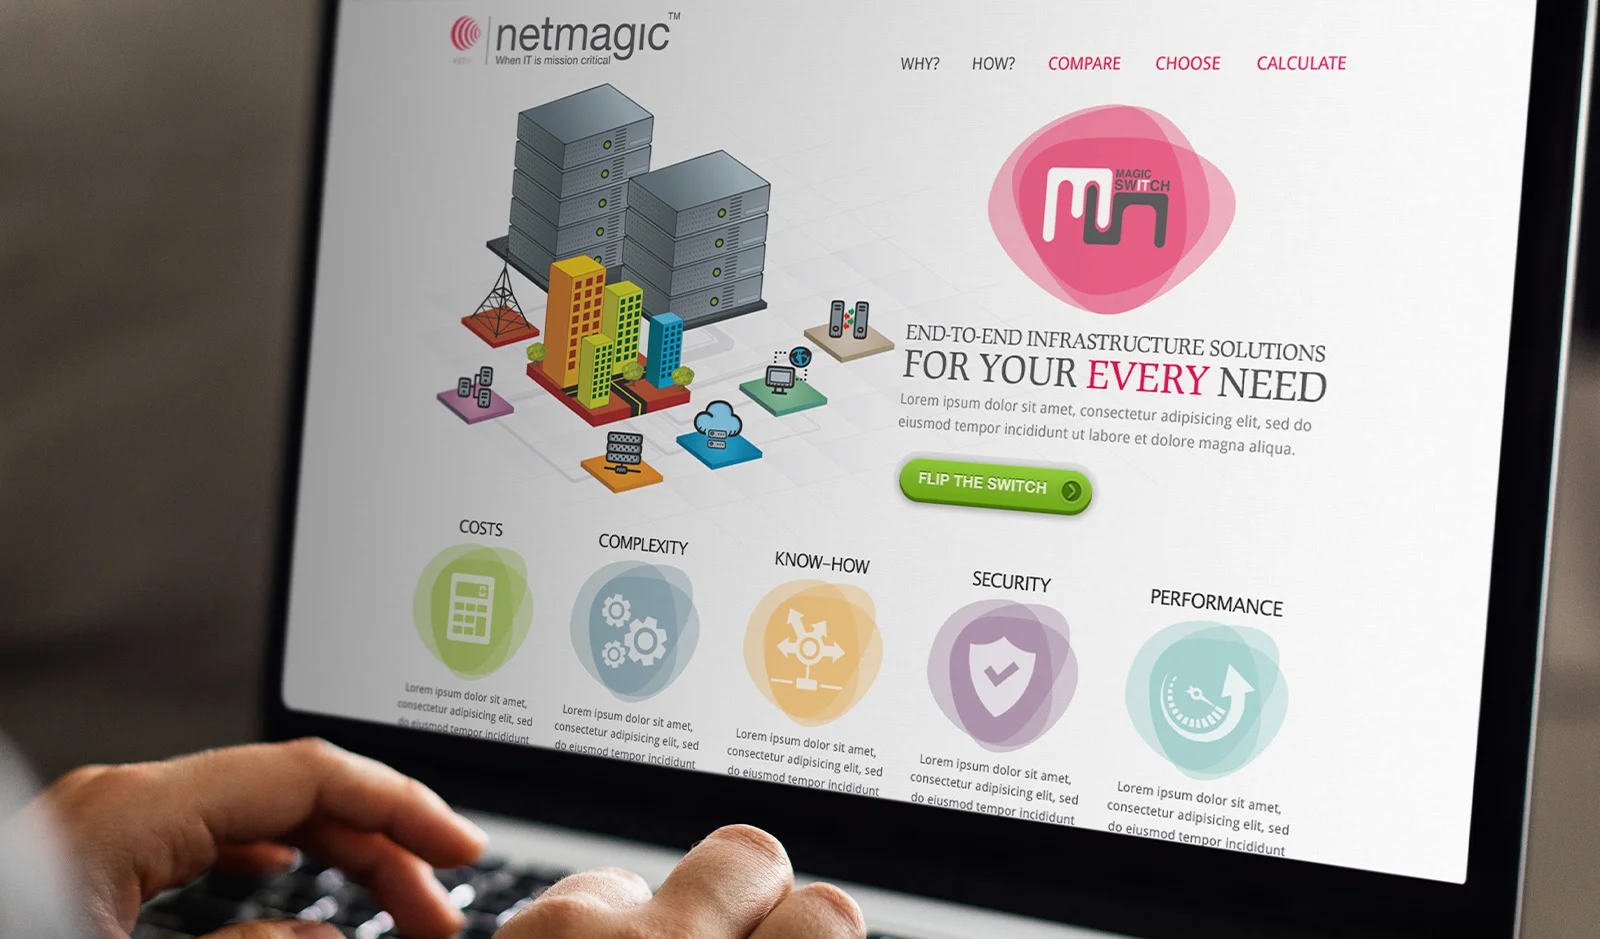 Netmagic Campaign: Switch